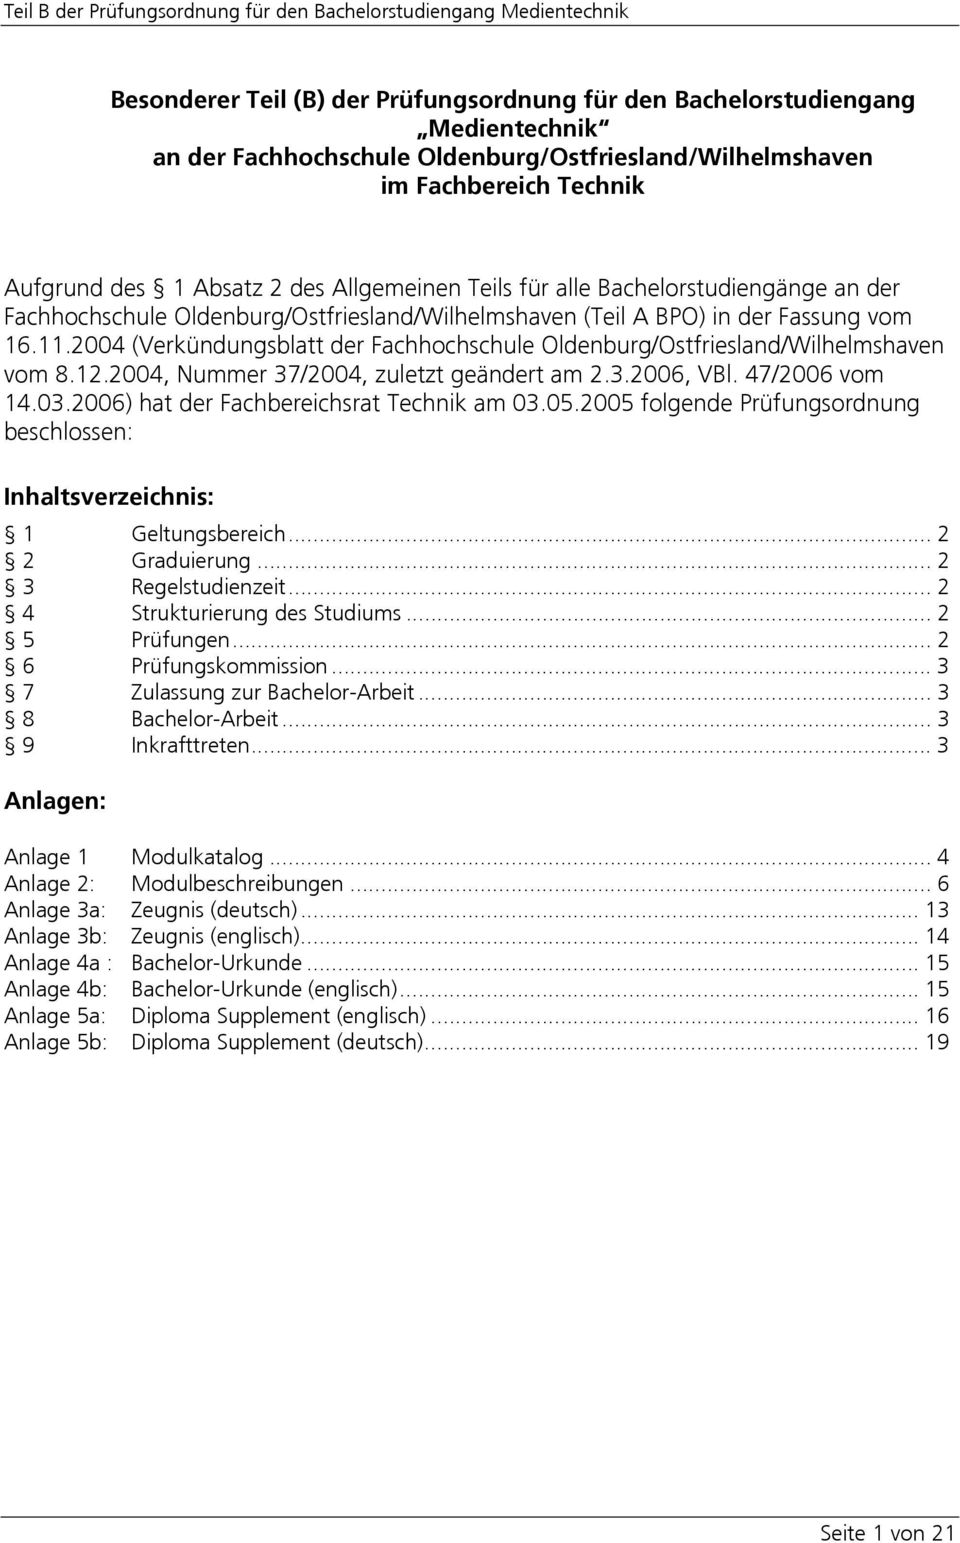 2004 (Verkündungsblatt der Fachhochschule Oldenburg/Ostfriesland/Wilhelmshaven vom 8.12.2004, Nummer 37/2004, zuletzt geändert am 2.3.2006, VBl. 47/2006 vom 14.03.